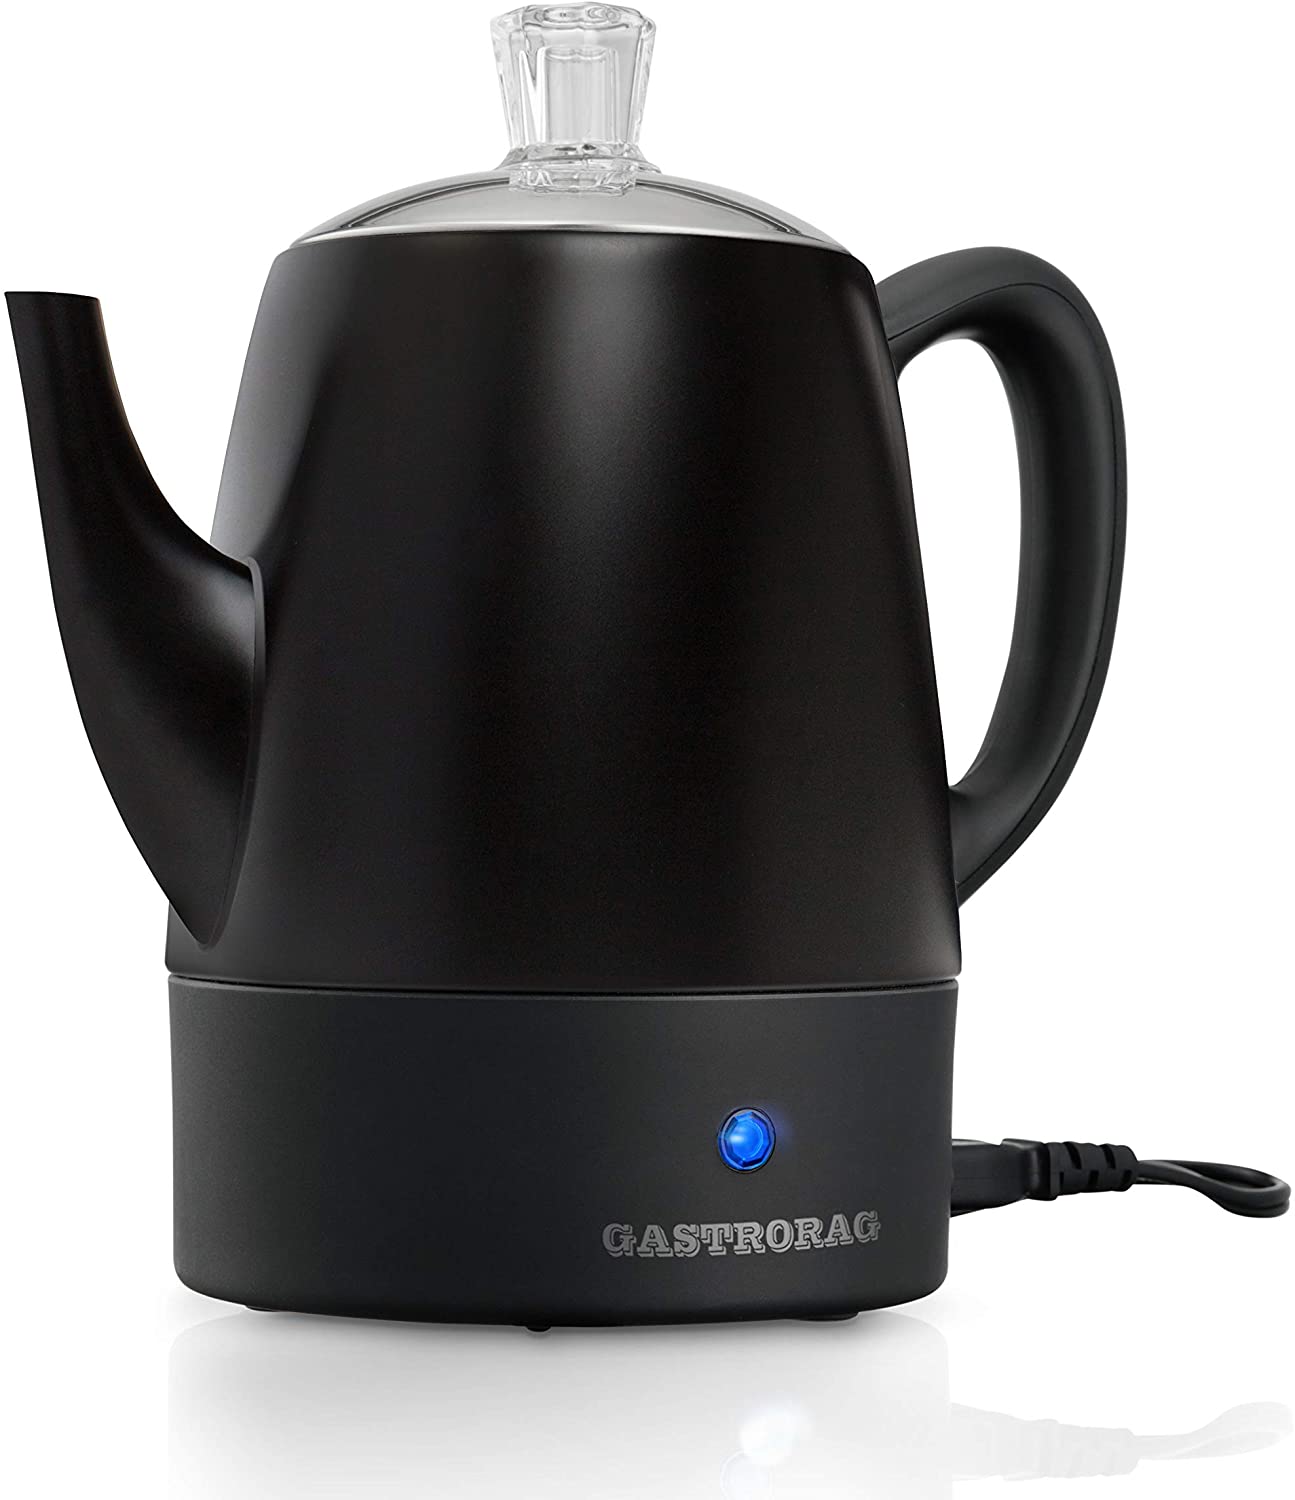 Gastrorag 4 Cup Electric Coffee Percolator